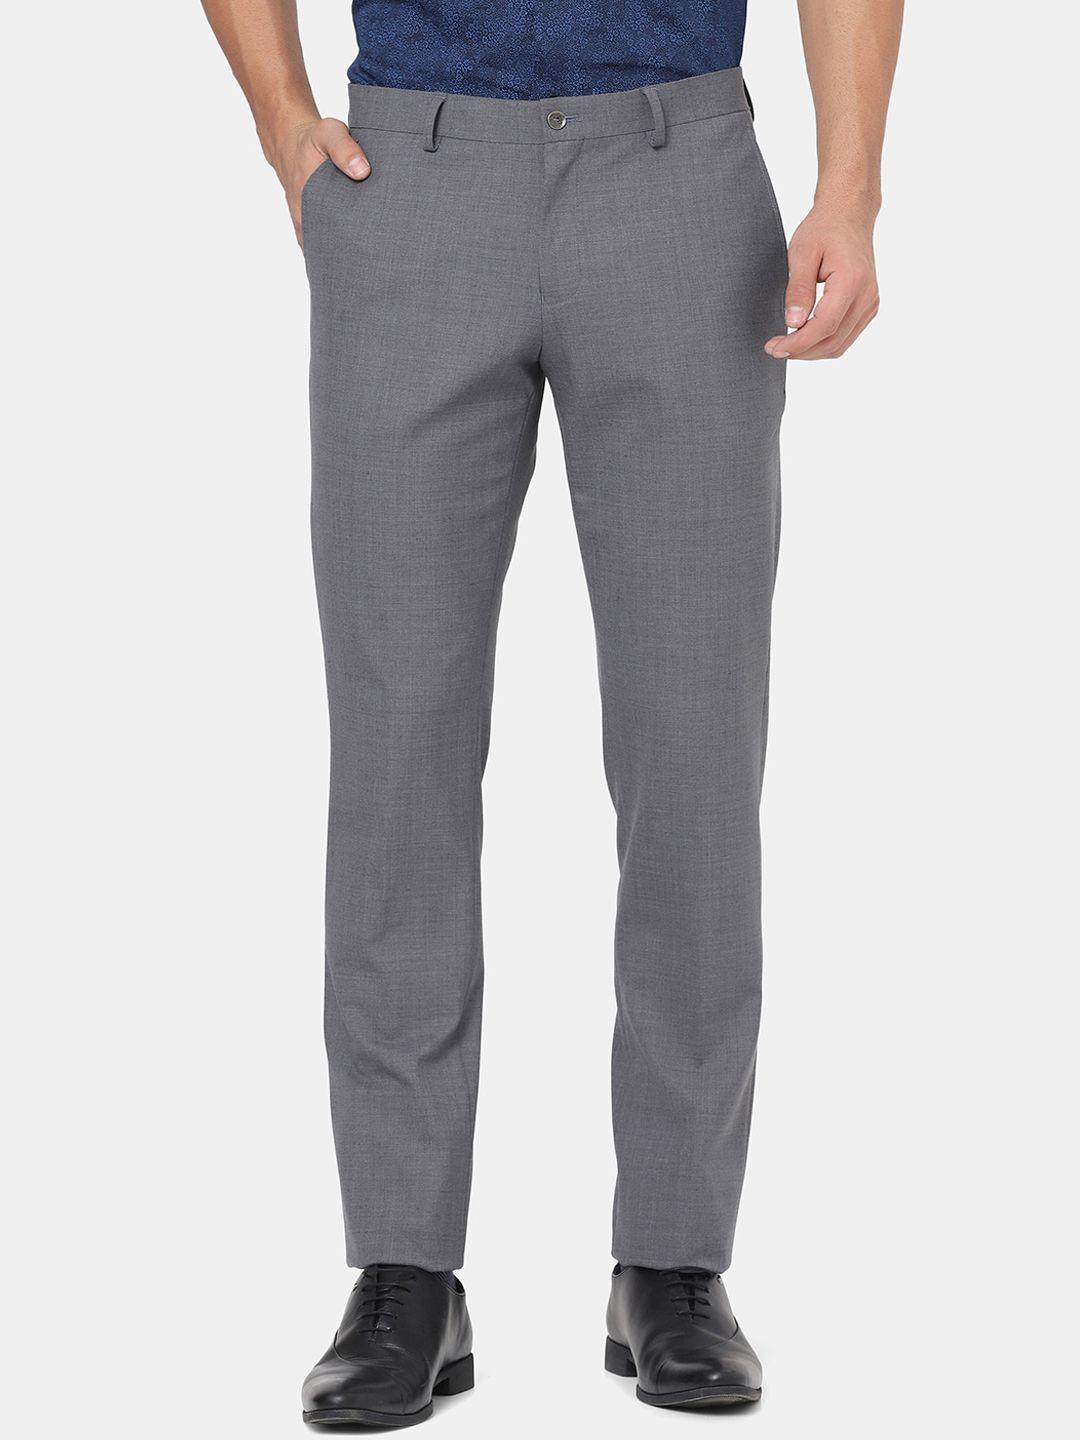 blackberrys-men-grey-slim-fit-low-rise-trousers